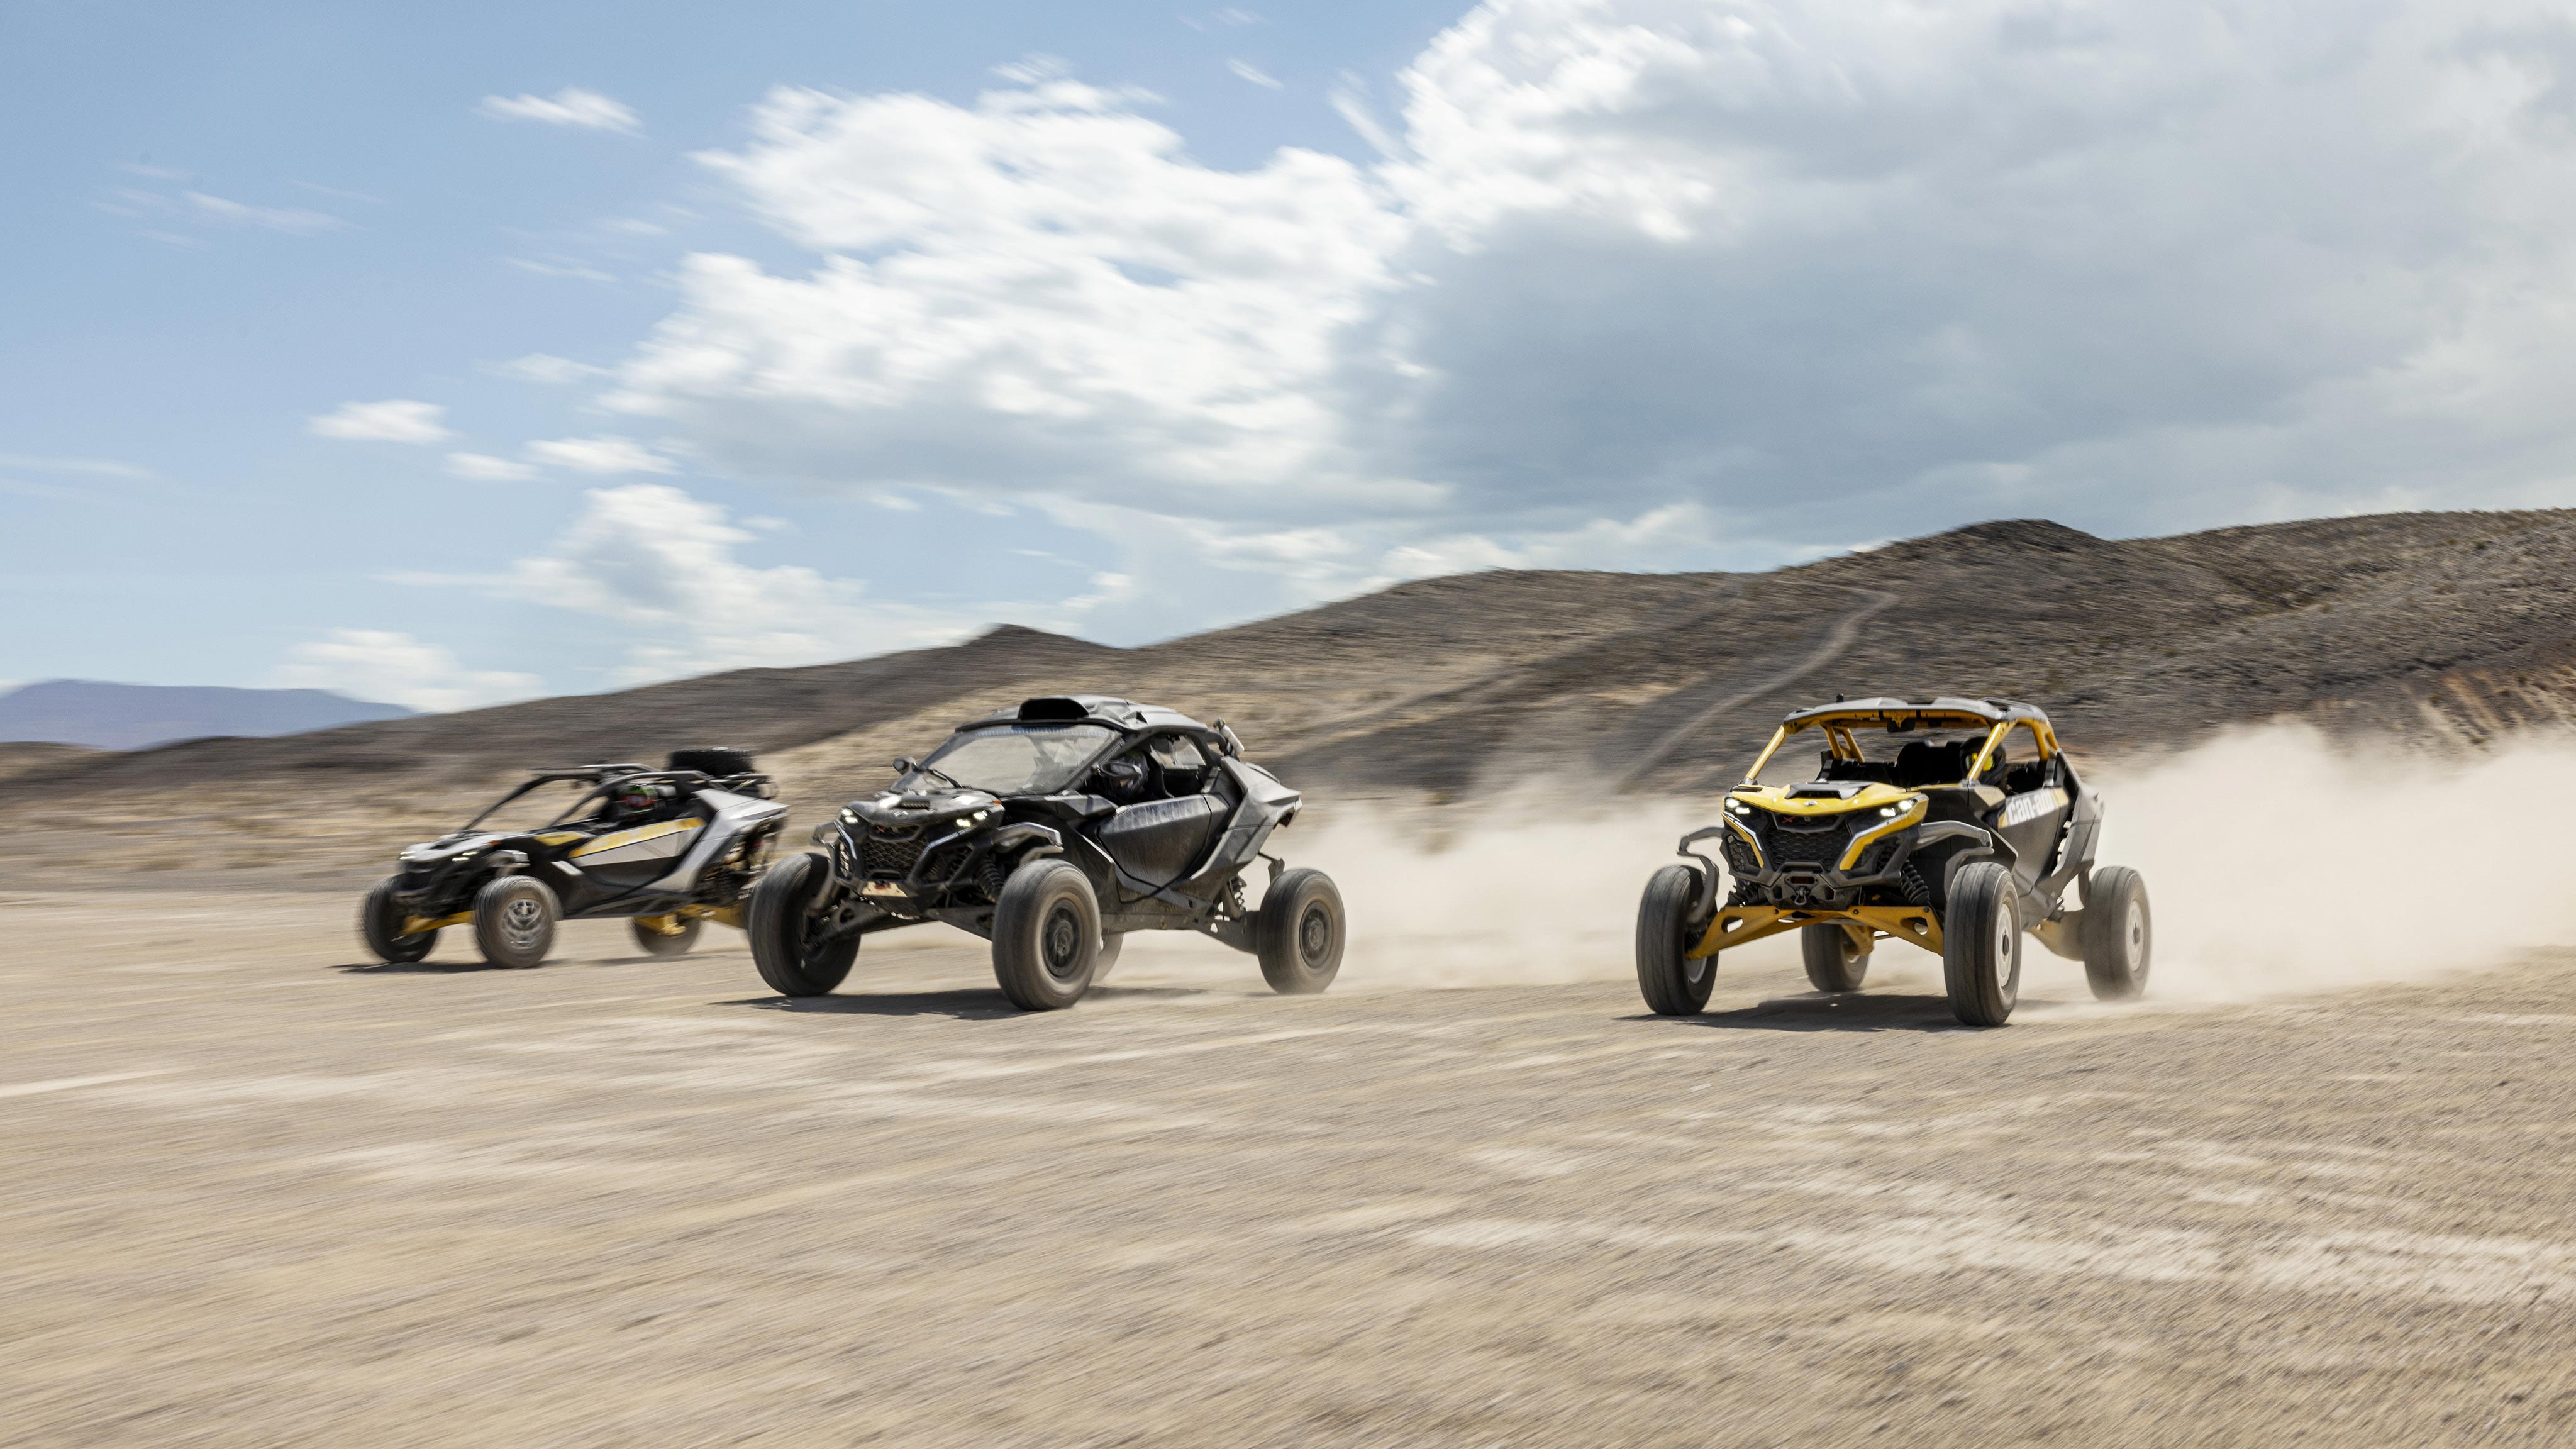 Drie Can-Am terreinwagens racen in de woestijn